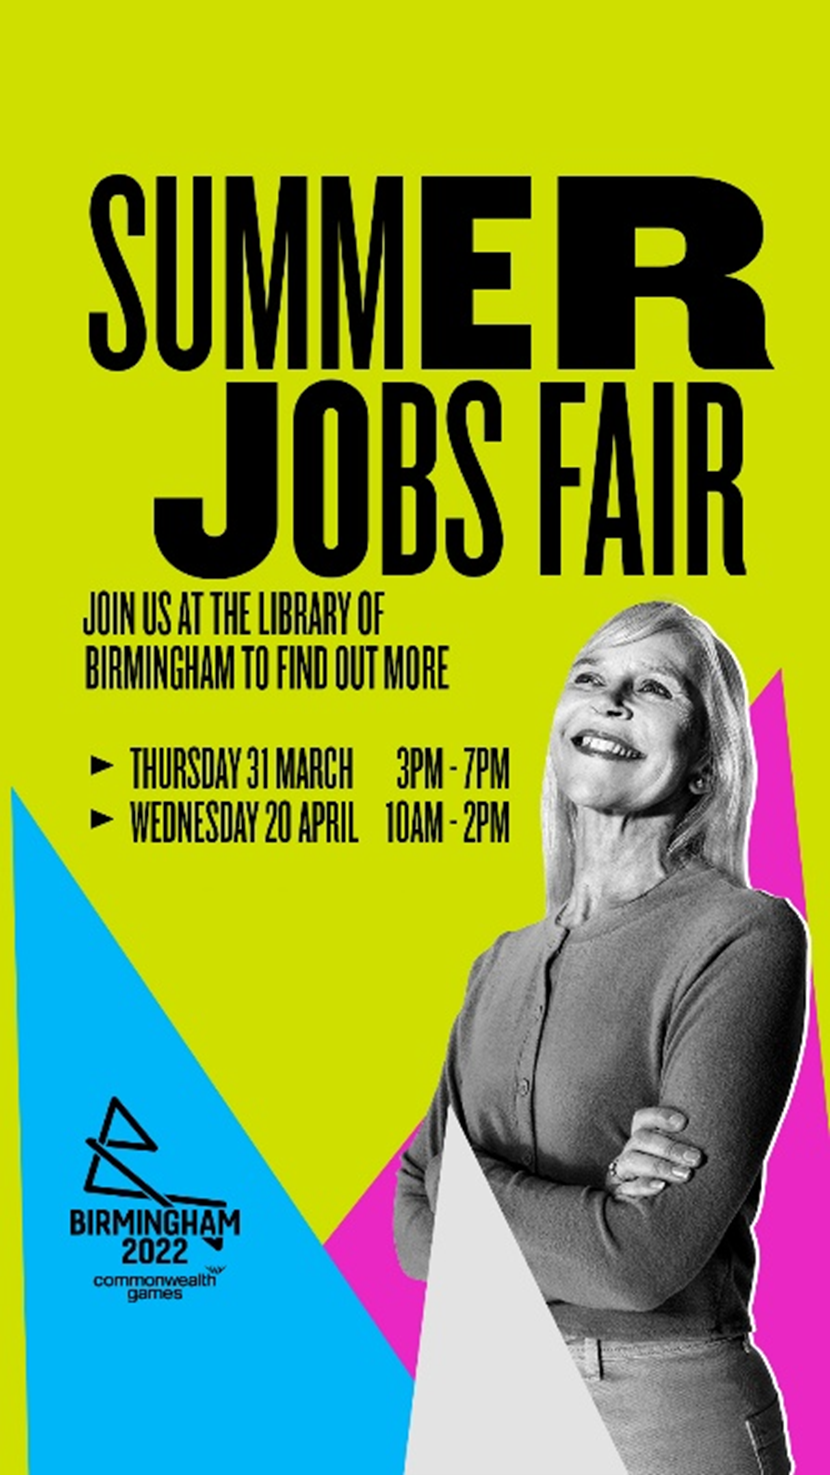 Jobs Fair Poster